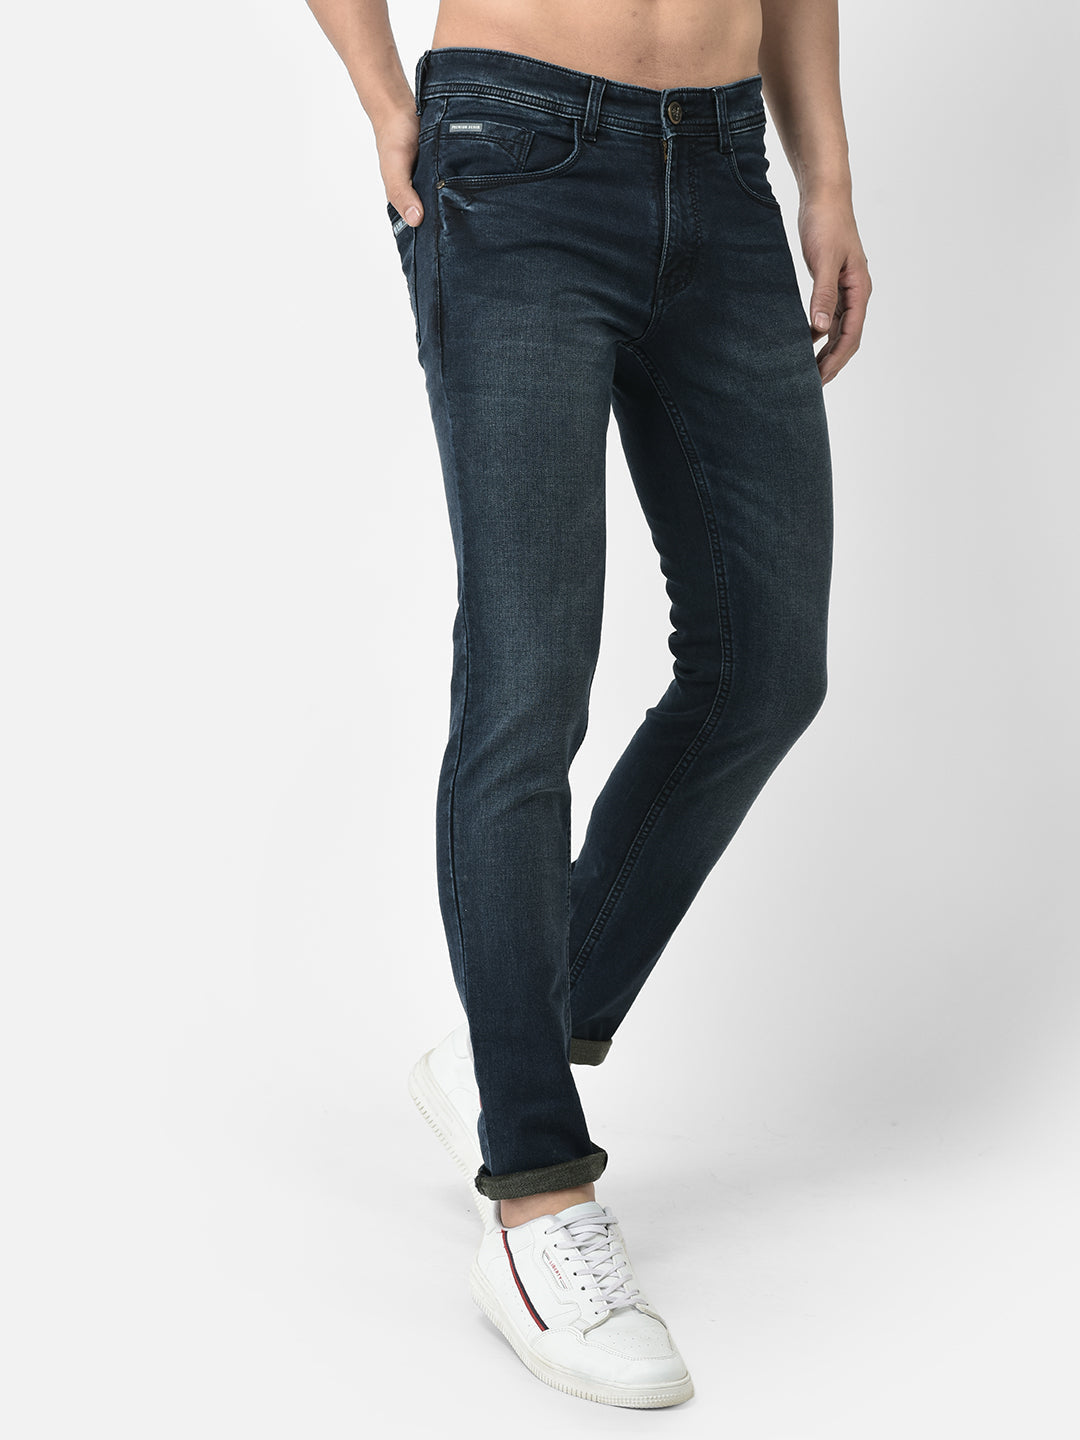 Cobb Dark Blue Narrow Fit Jeans